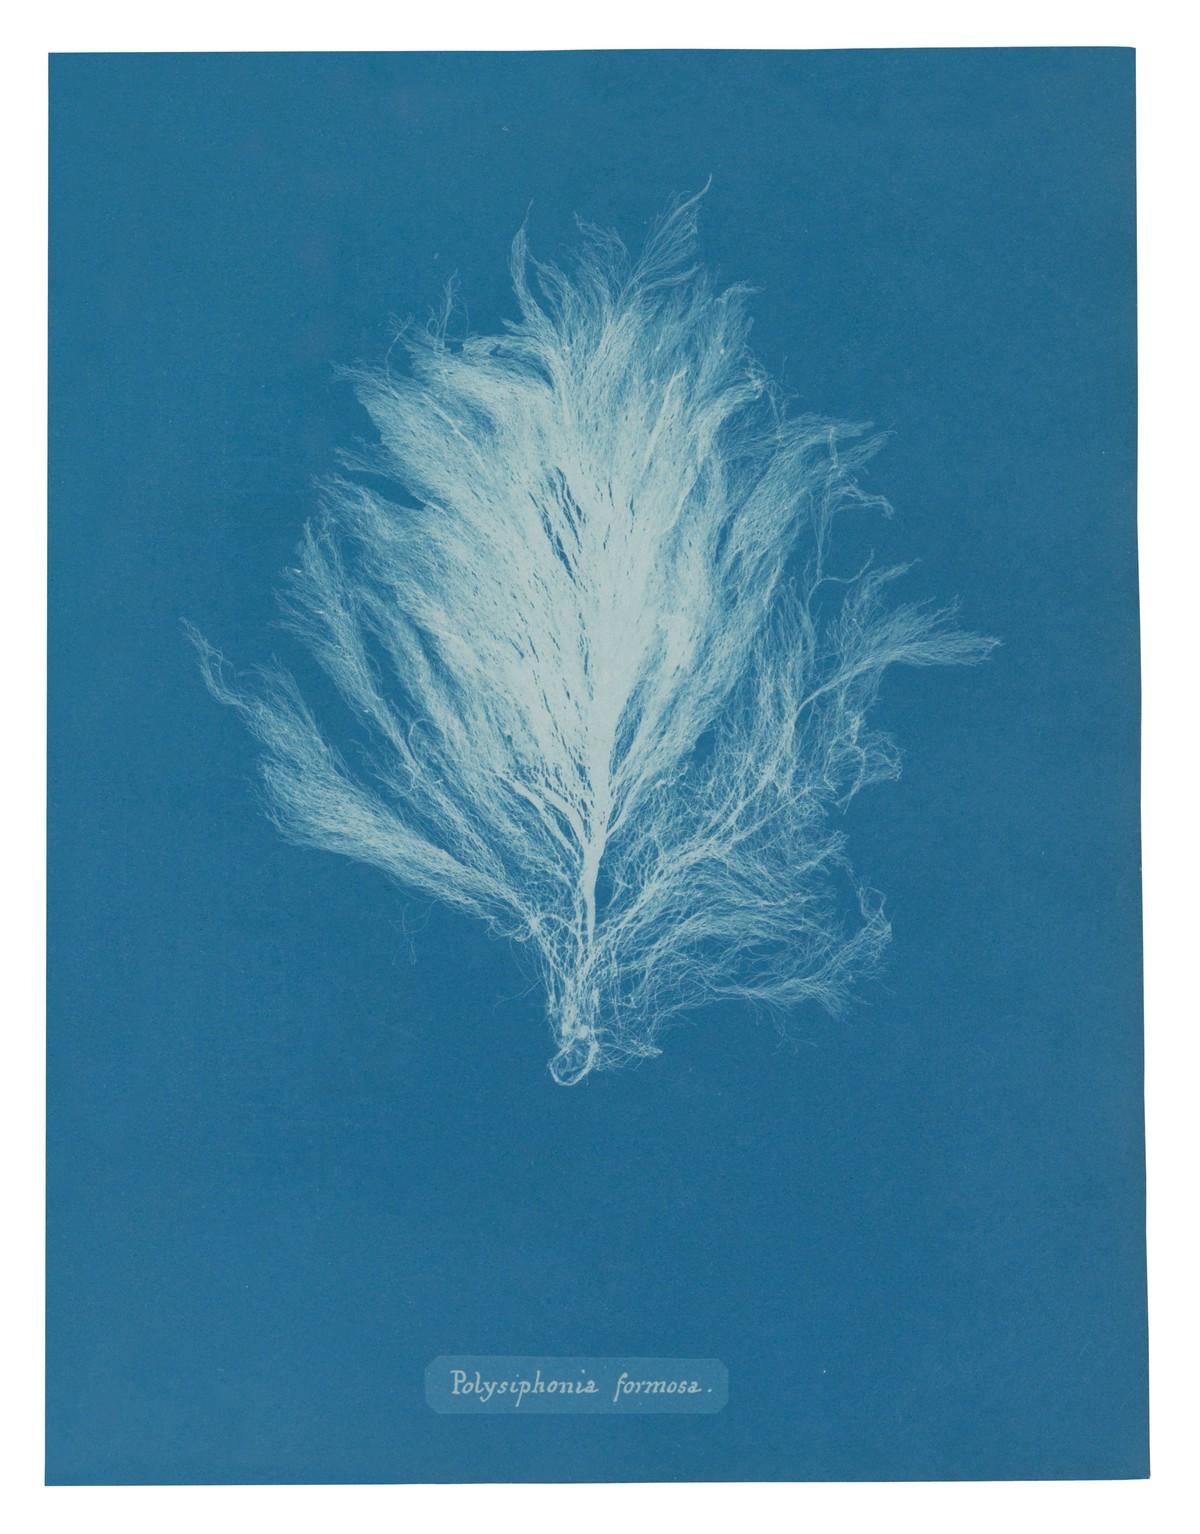 Die unnachahmlichen Cyanotypie-Fotogramme von Algen und Farnen, die Atkins anfertigte, bilden die ersten Bücher mit Fotografien. | Foto: TASCHEN / Rijksmuseum, Amsterdam